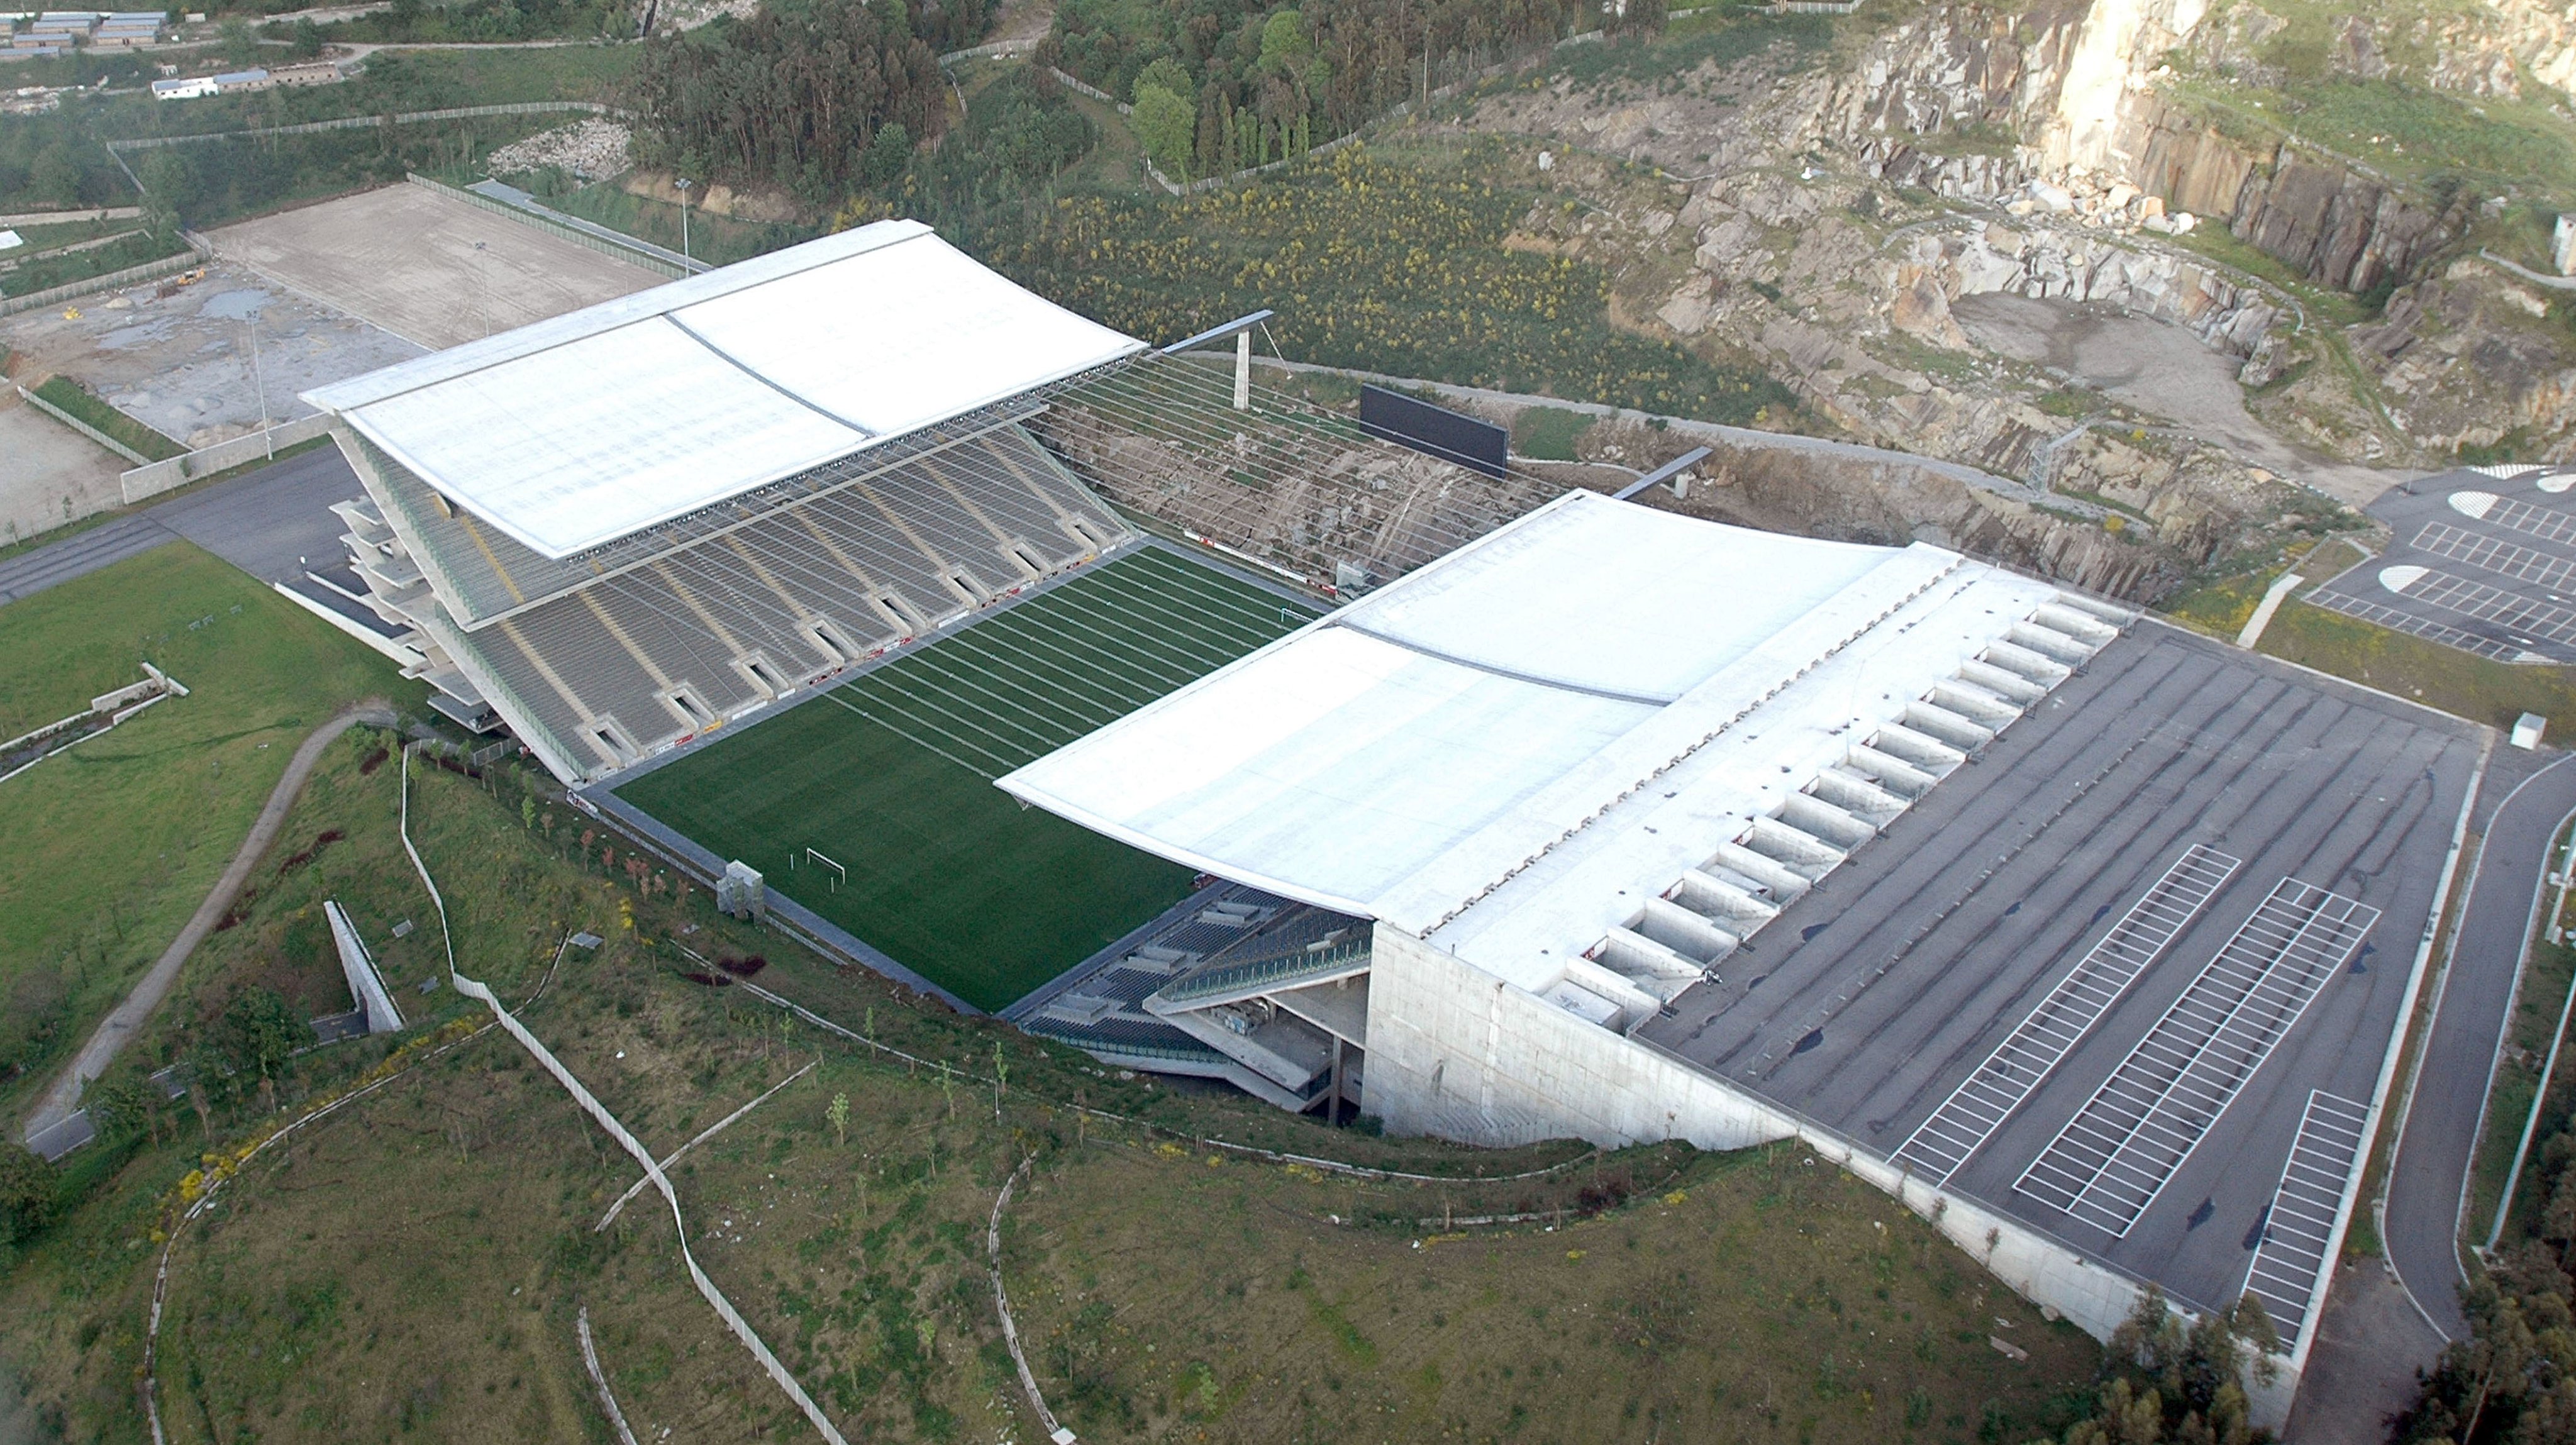 O Sporting de Braga paga 500 euros de renda mensal pela utilização do estádio